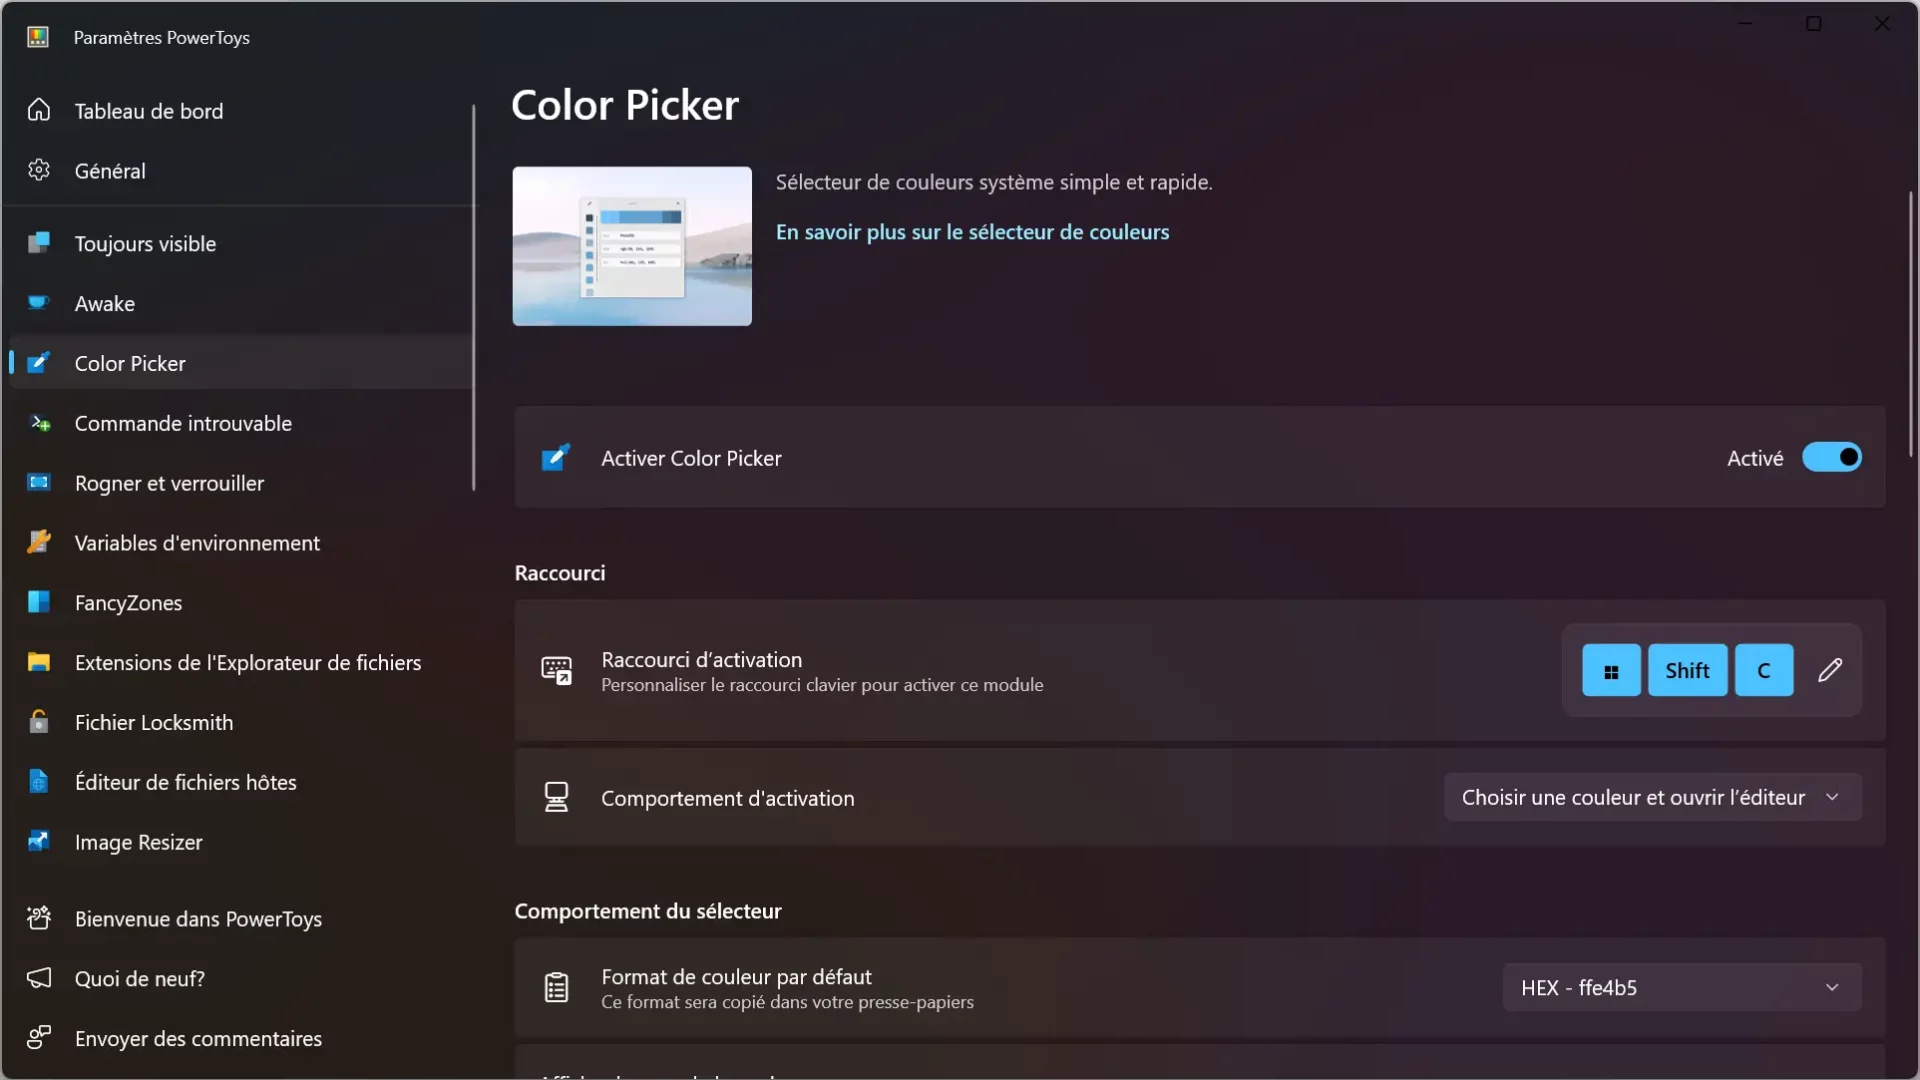 Color Picker, un sélecteur de couleurs système simple et rapide